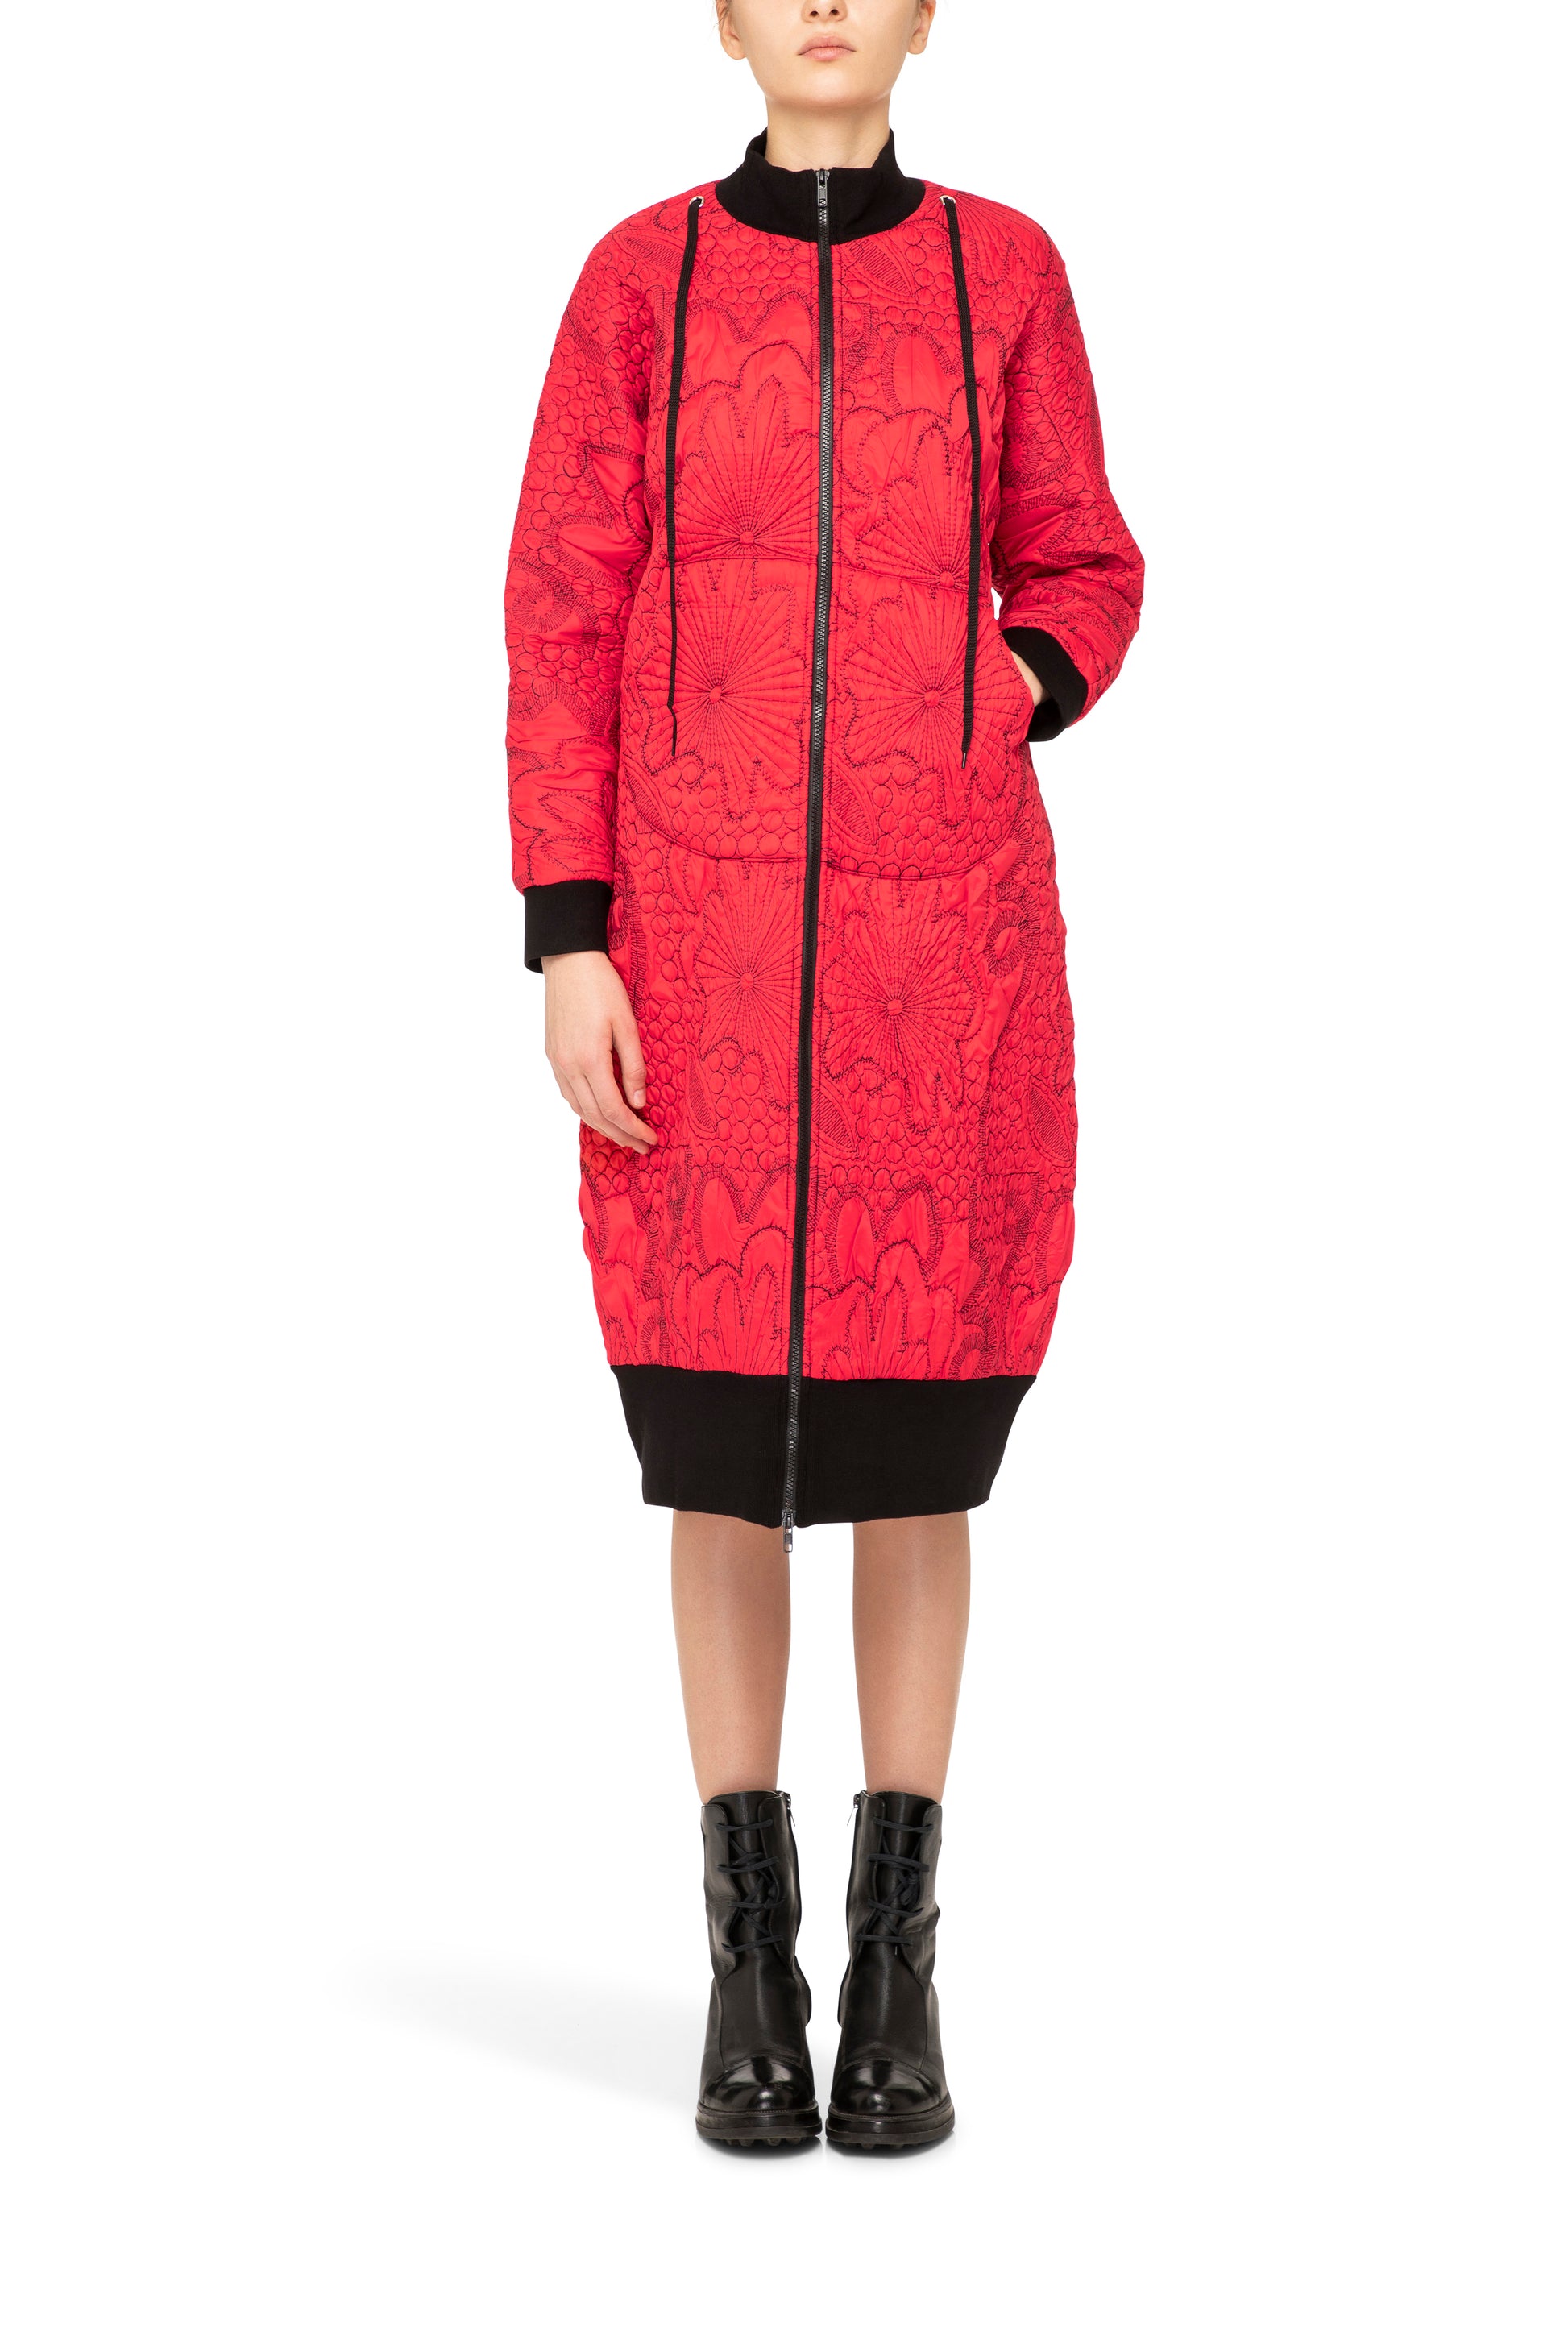 Lampo Coat in red, red coat, red and black coat, padded coat, embroidered coat, fashion coat, designer coat, bright coat, unique coat